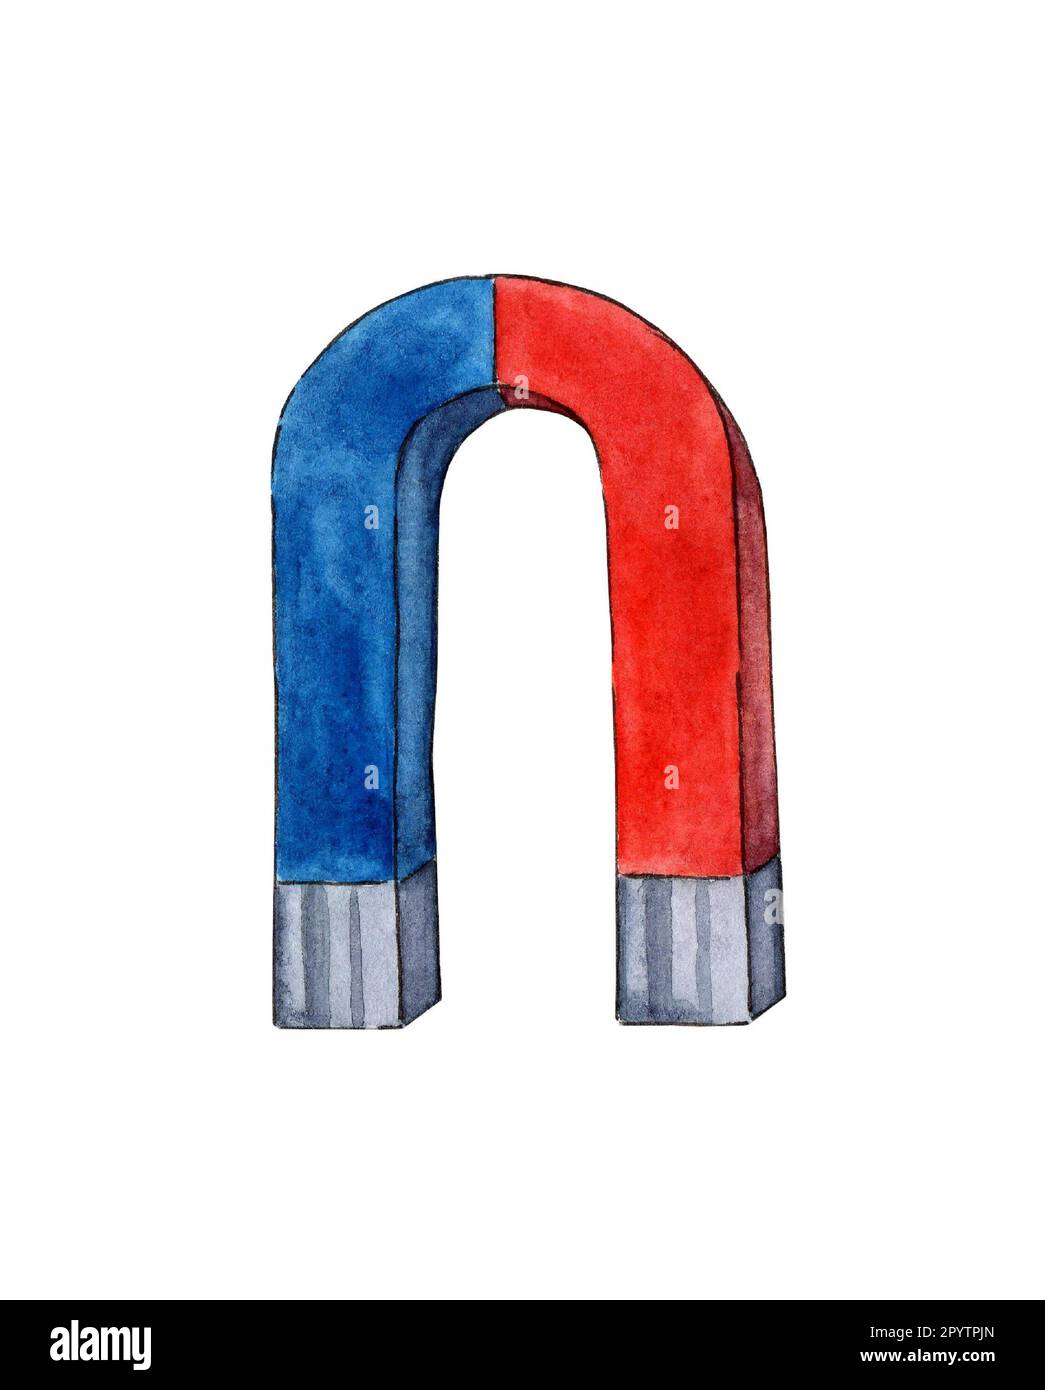 Aquarelle Darstellung eines roten und blauen Hufeisenmagneten. U-förmiges Magnetsymbol. Magnetismus, Magnetisierung, Anziehungskonzept. Zurück in die Schule. Isolat Stockfoto